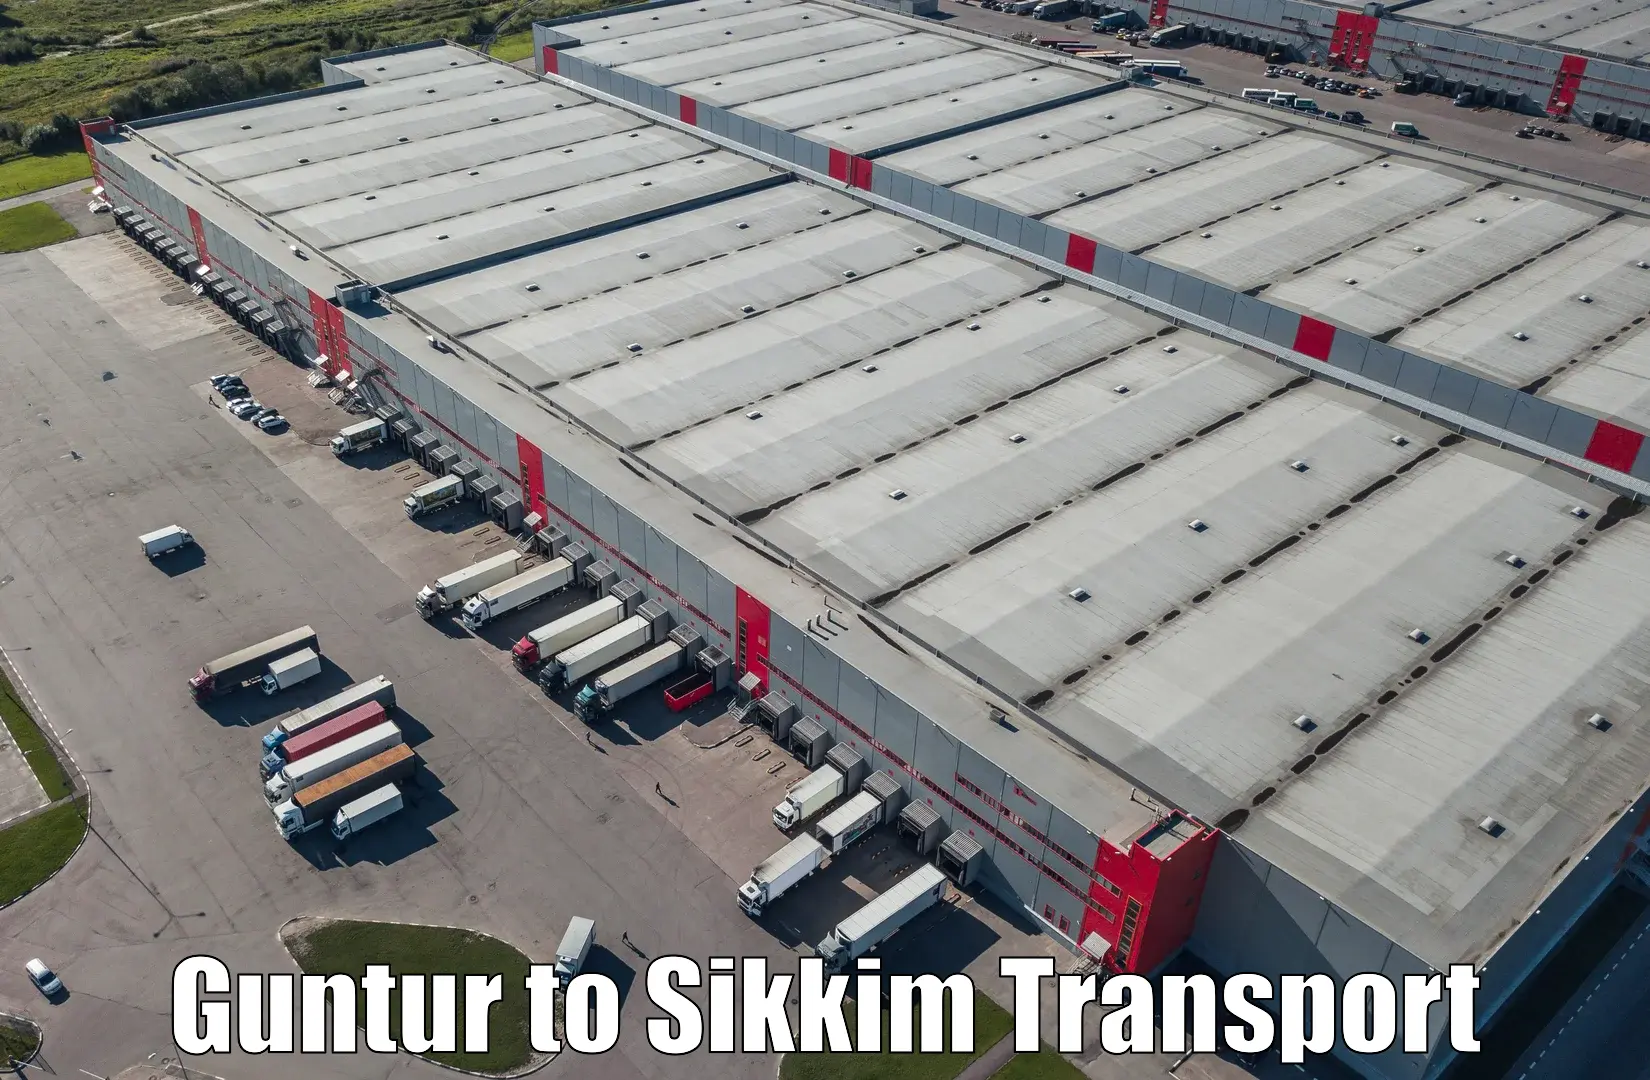 Nearest transport service Guntur to Sikkim